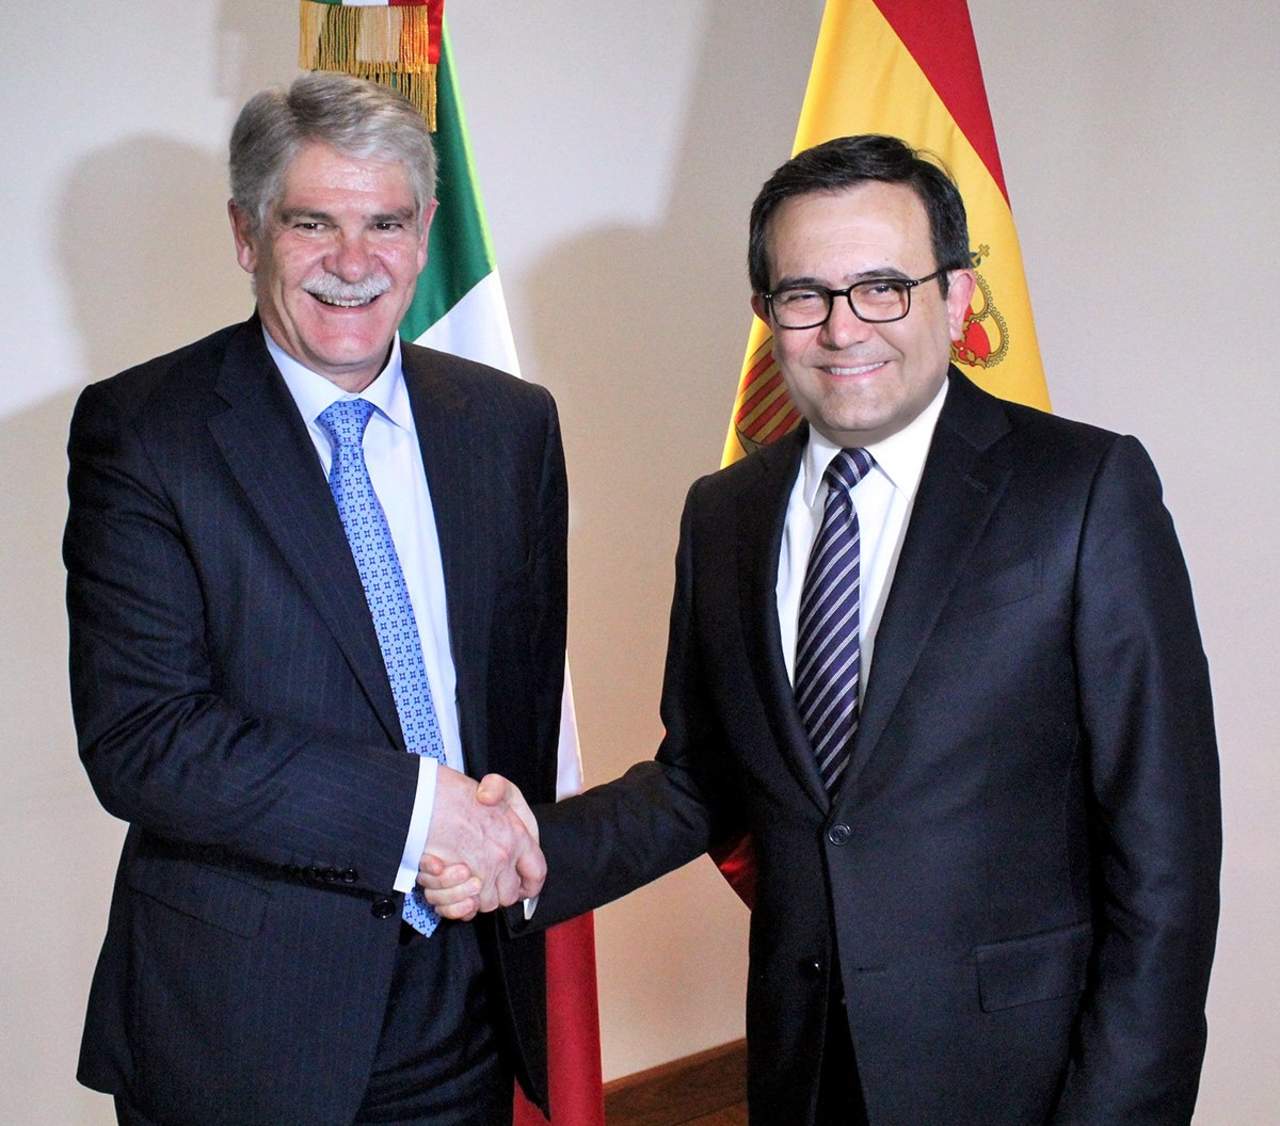 Dastis se reunió esta tarde con Guajardo durante su visita oficial a México, que comenzó con un encuentro con el presidente del país, Enrique Peña Nieto, en su residencia de Los Pinos. (TWITTER)